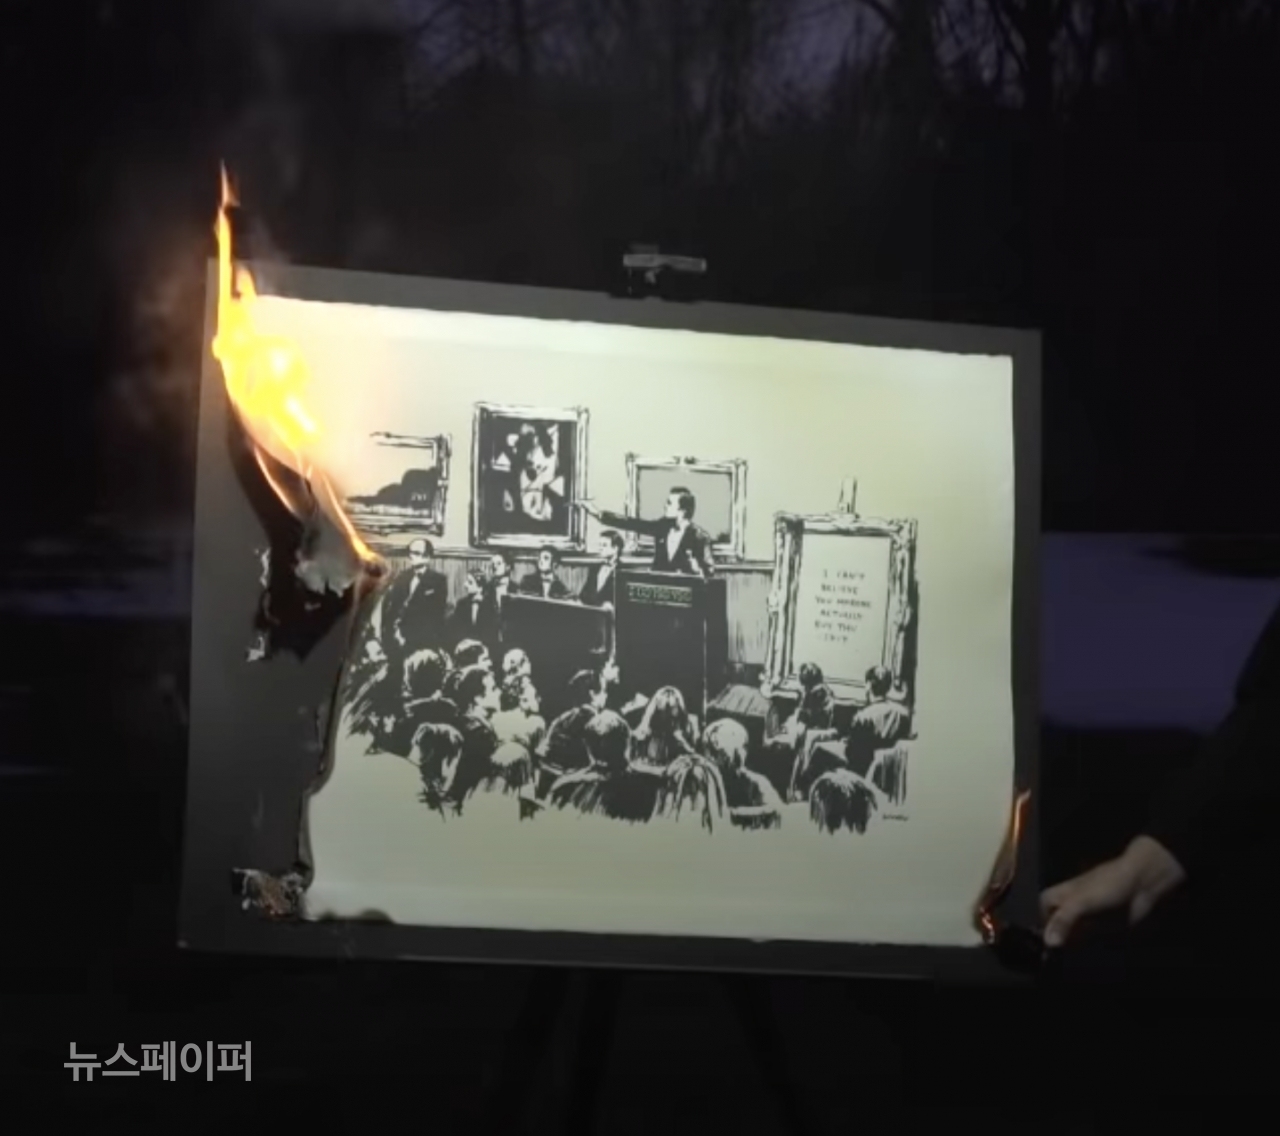 [BurntBanksy의 유튜브 채널의 한 장면. 뱅크시의 판화가 불에 타고 있다. 오른쪽에는 라이터를 들고 불을 붙이는 손.]